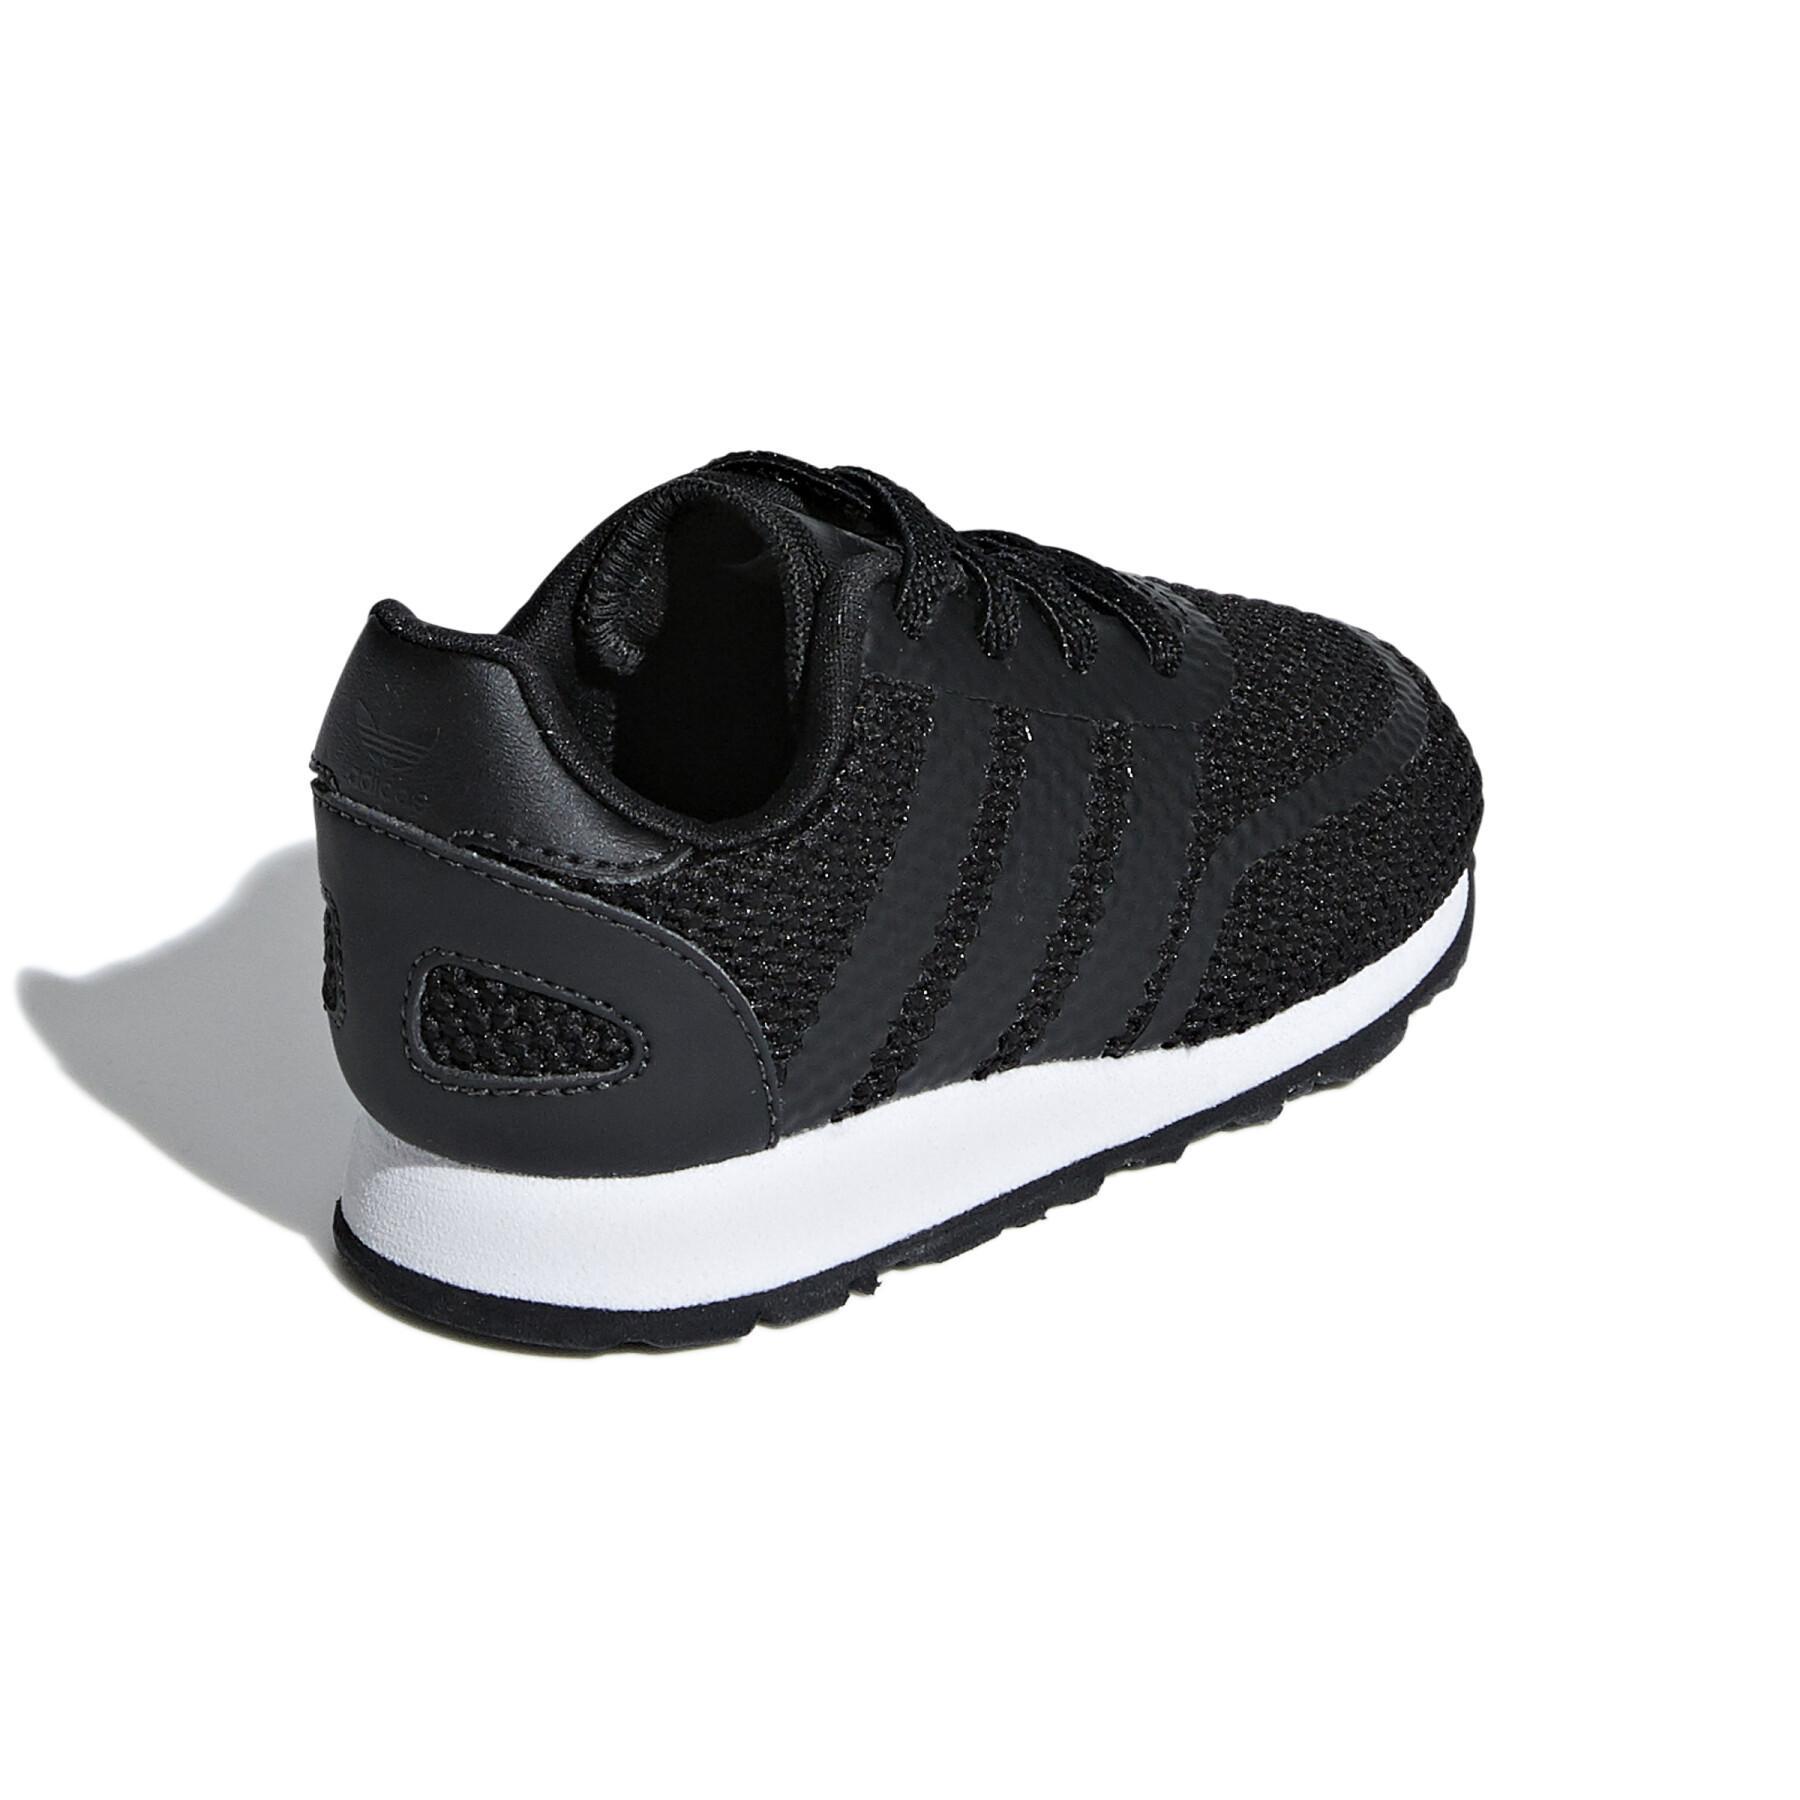 Baby sneakers adidas N-5923